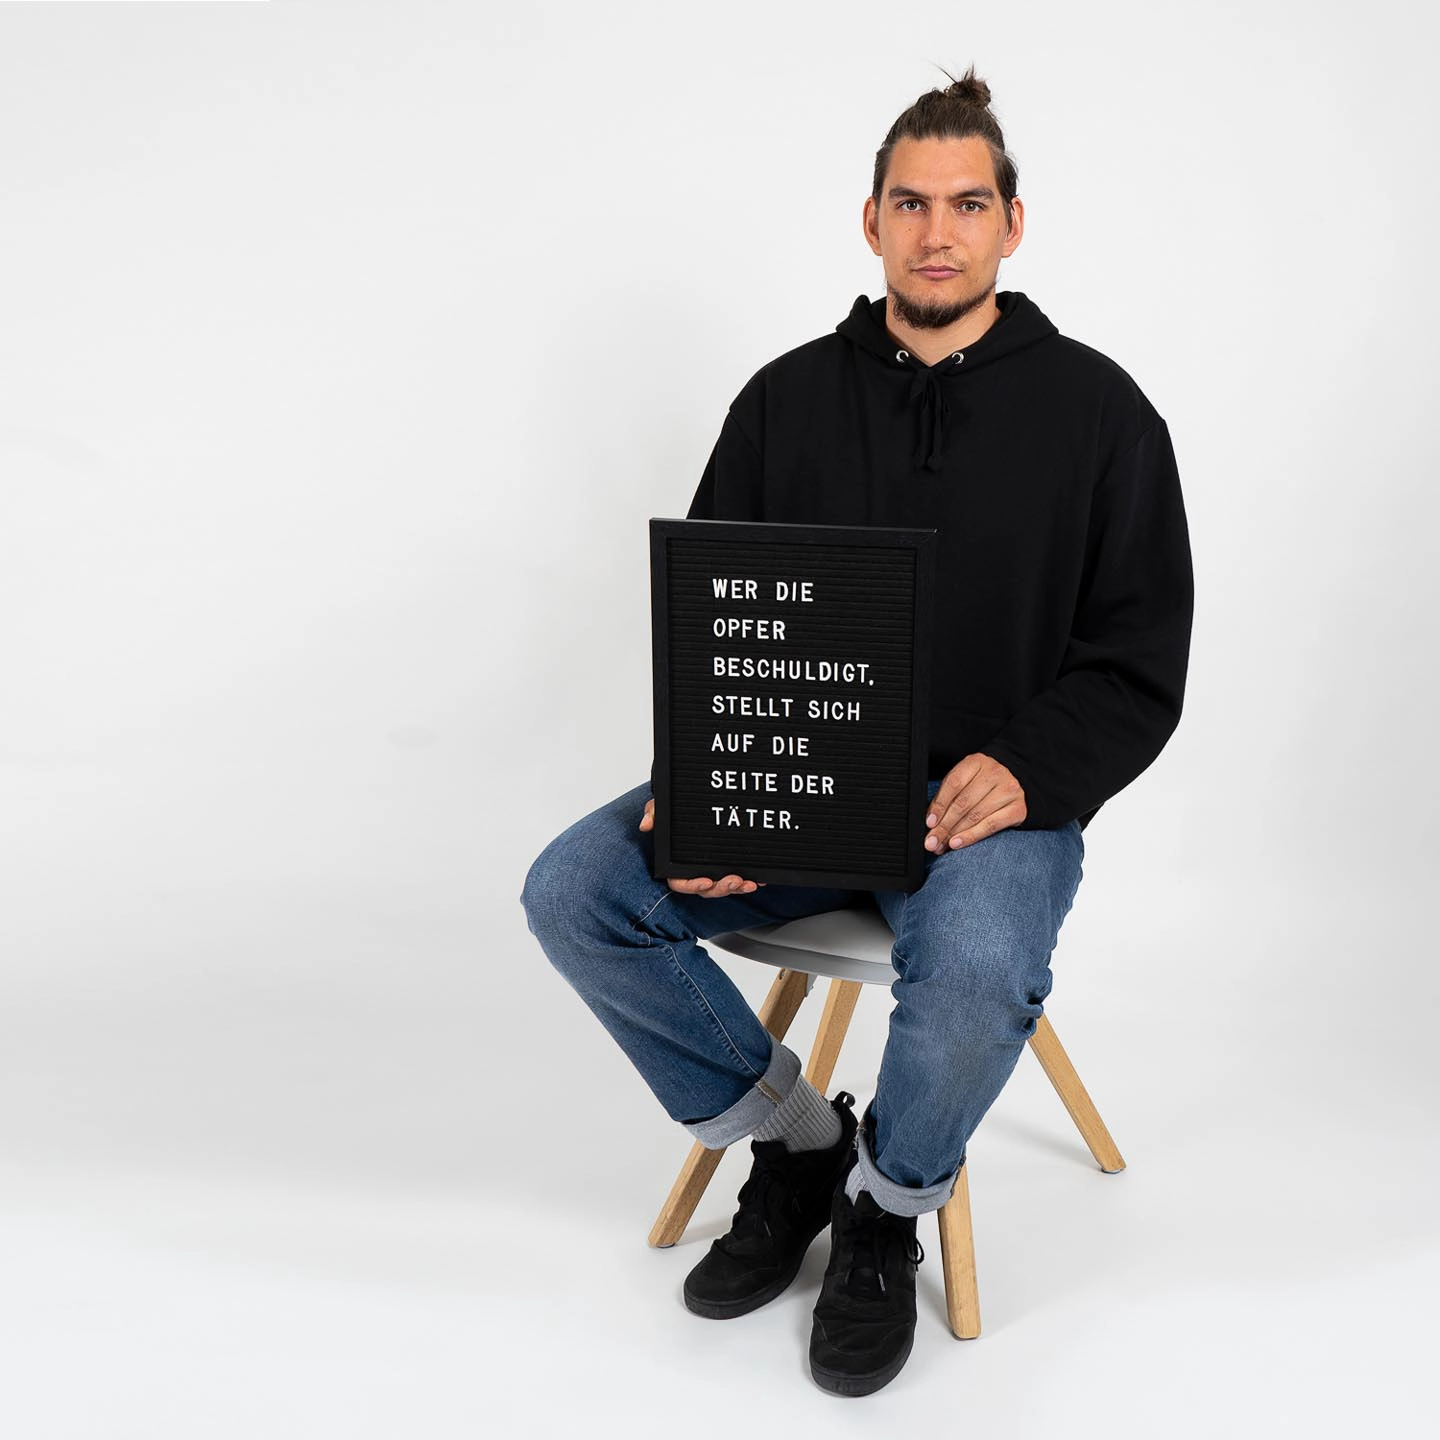 Ein Mann in schwarzem Pullover und Jeans sitzt auf einem Hocker und hält ein schwarzes Schild mit weißer Aufschrift für das Fotoshooting für 'Was hattest du an?'.